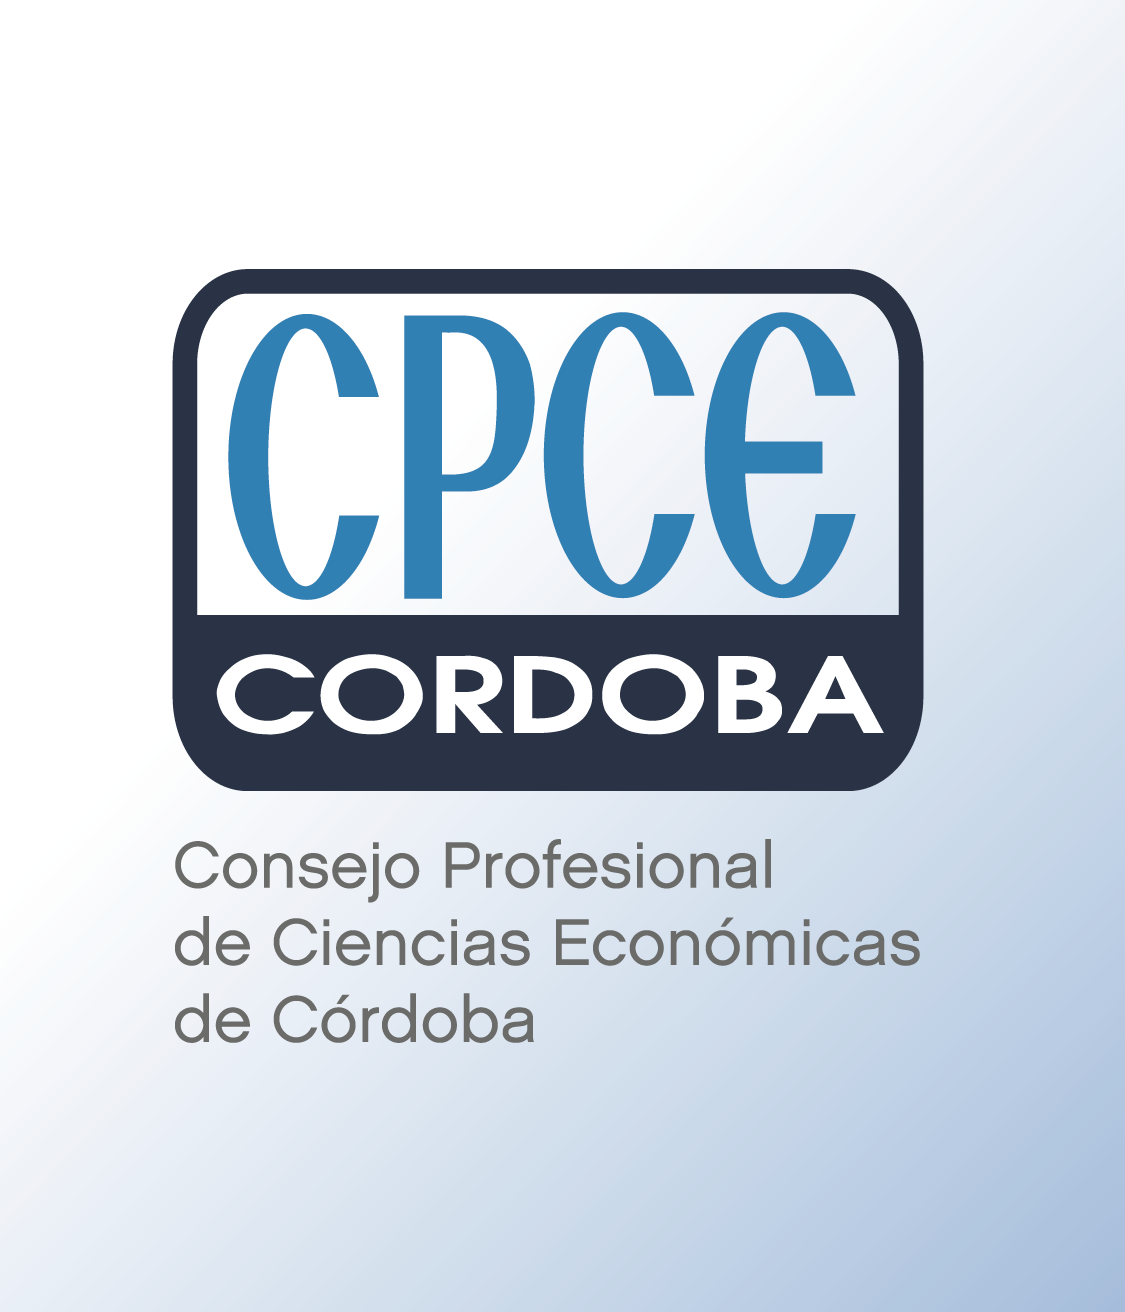 Consejo Profesional de Ciencias Ecónomicas de Córdoba